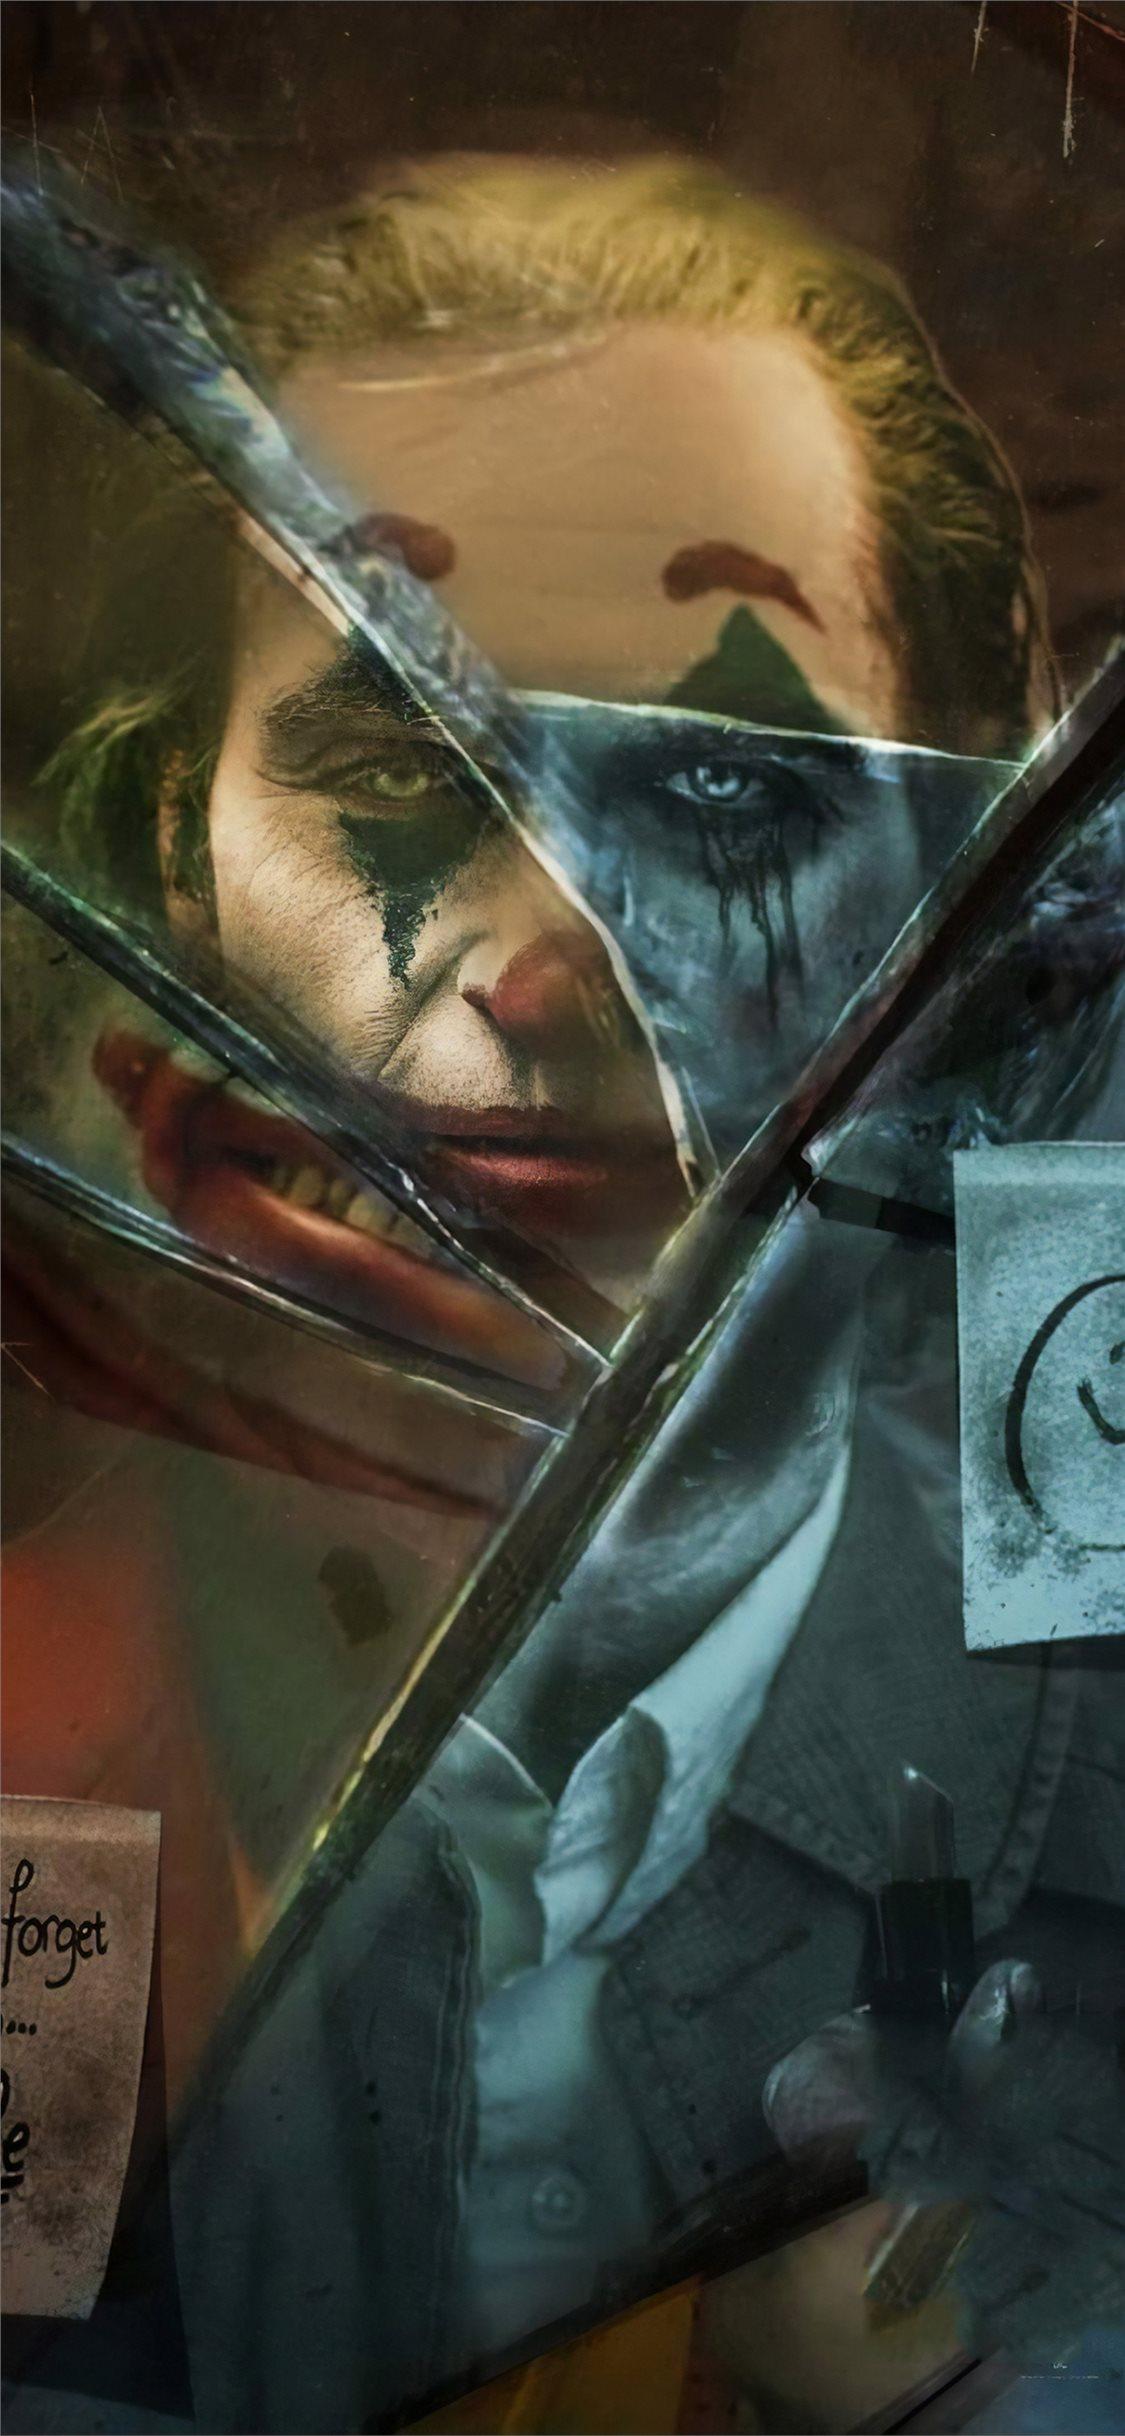 joker movie broken glass iPhone X Wallpaper Free Download